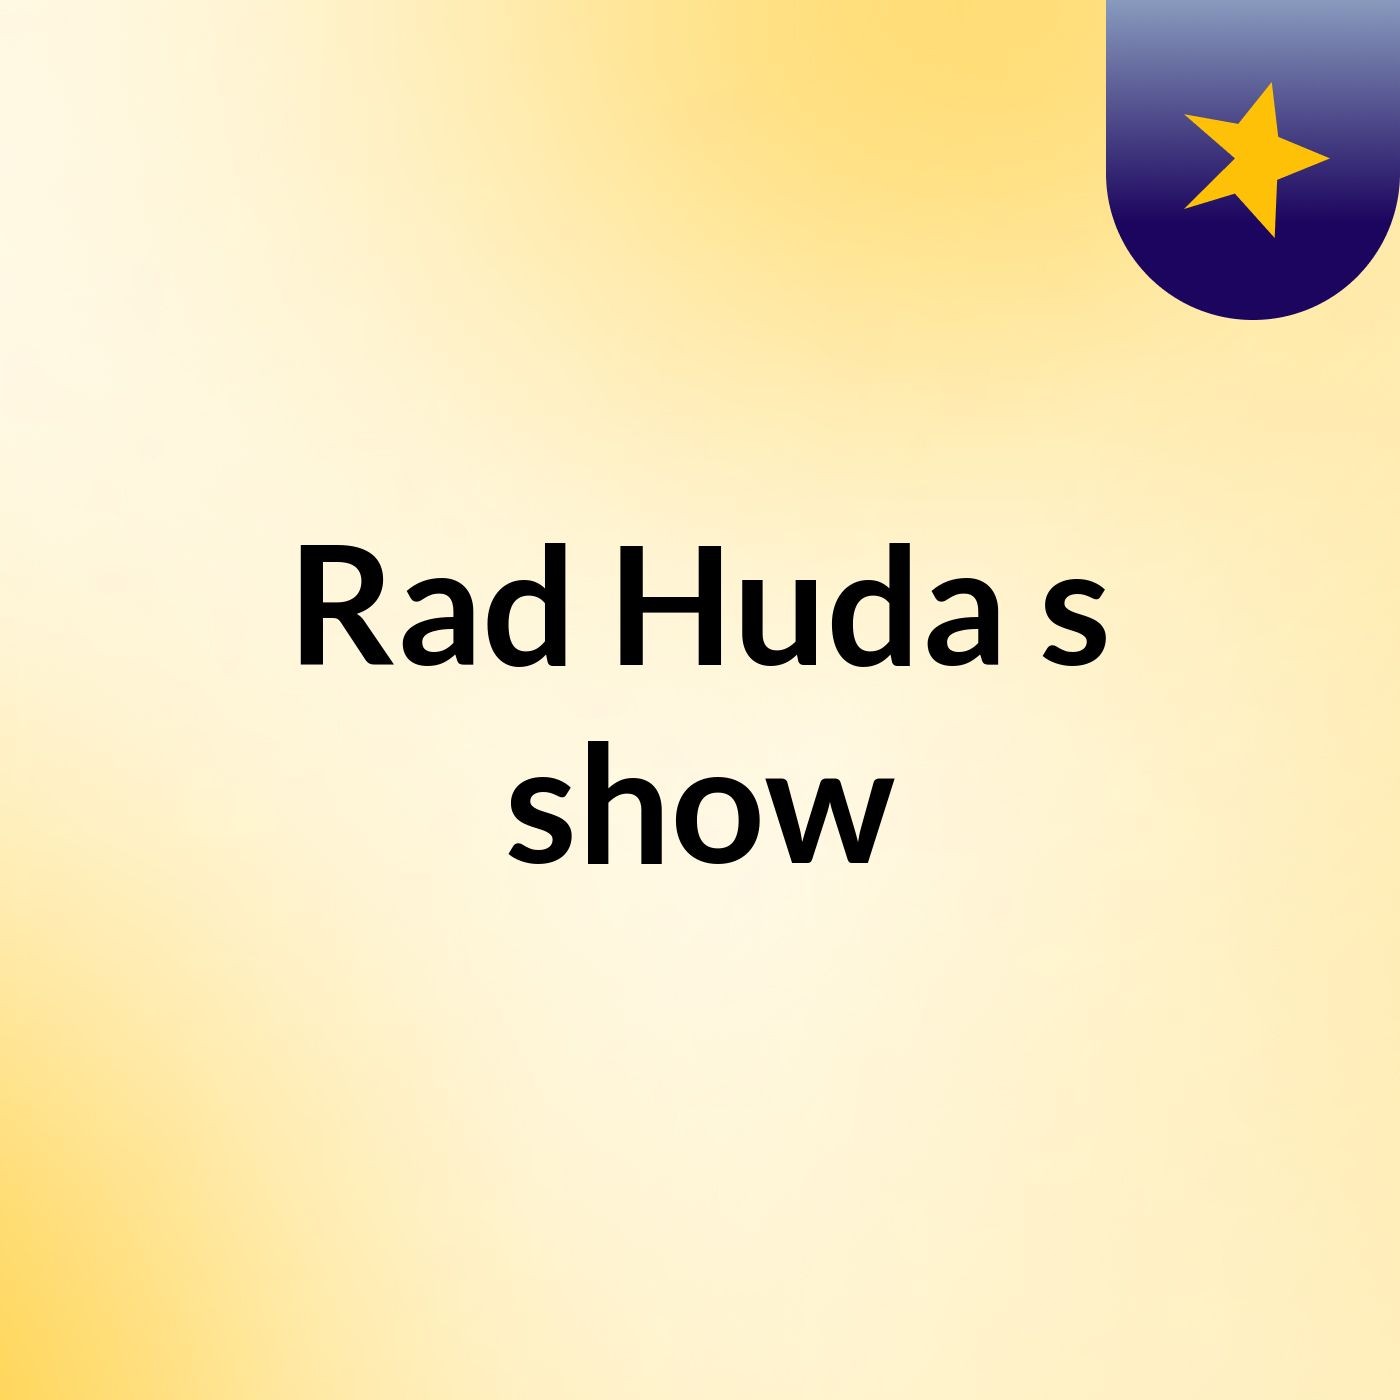 Rad Huda's show